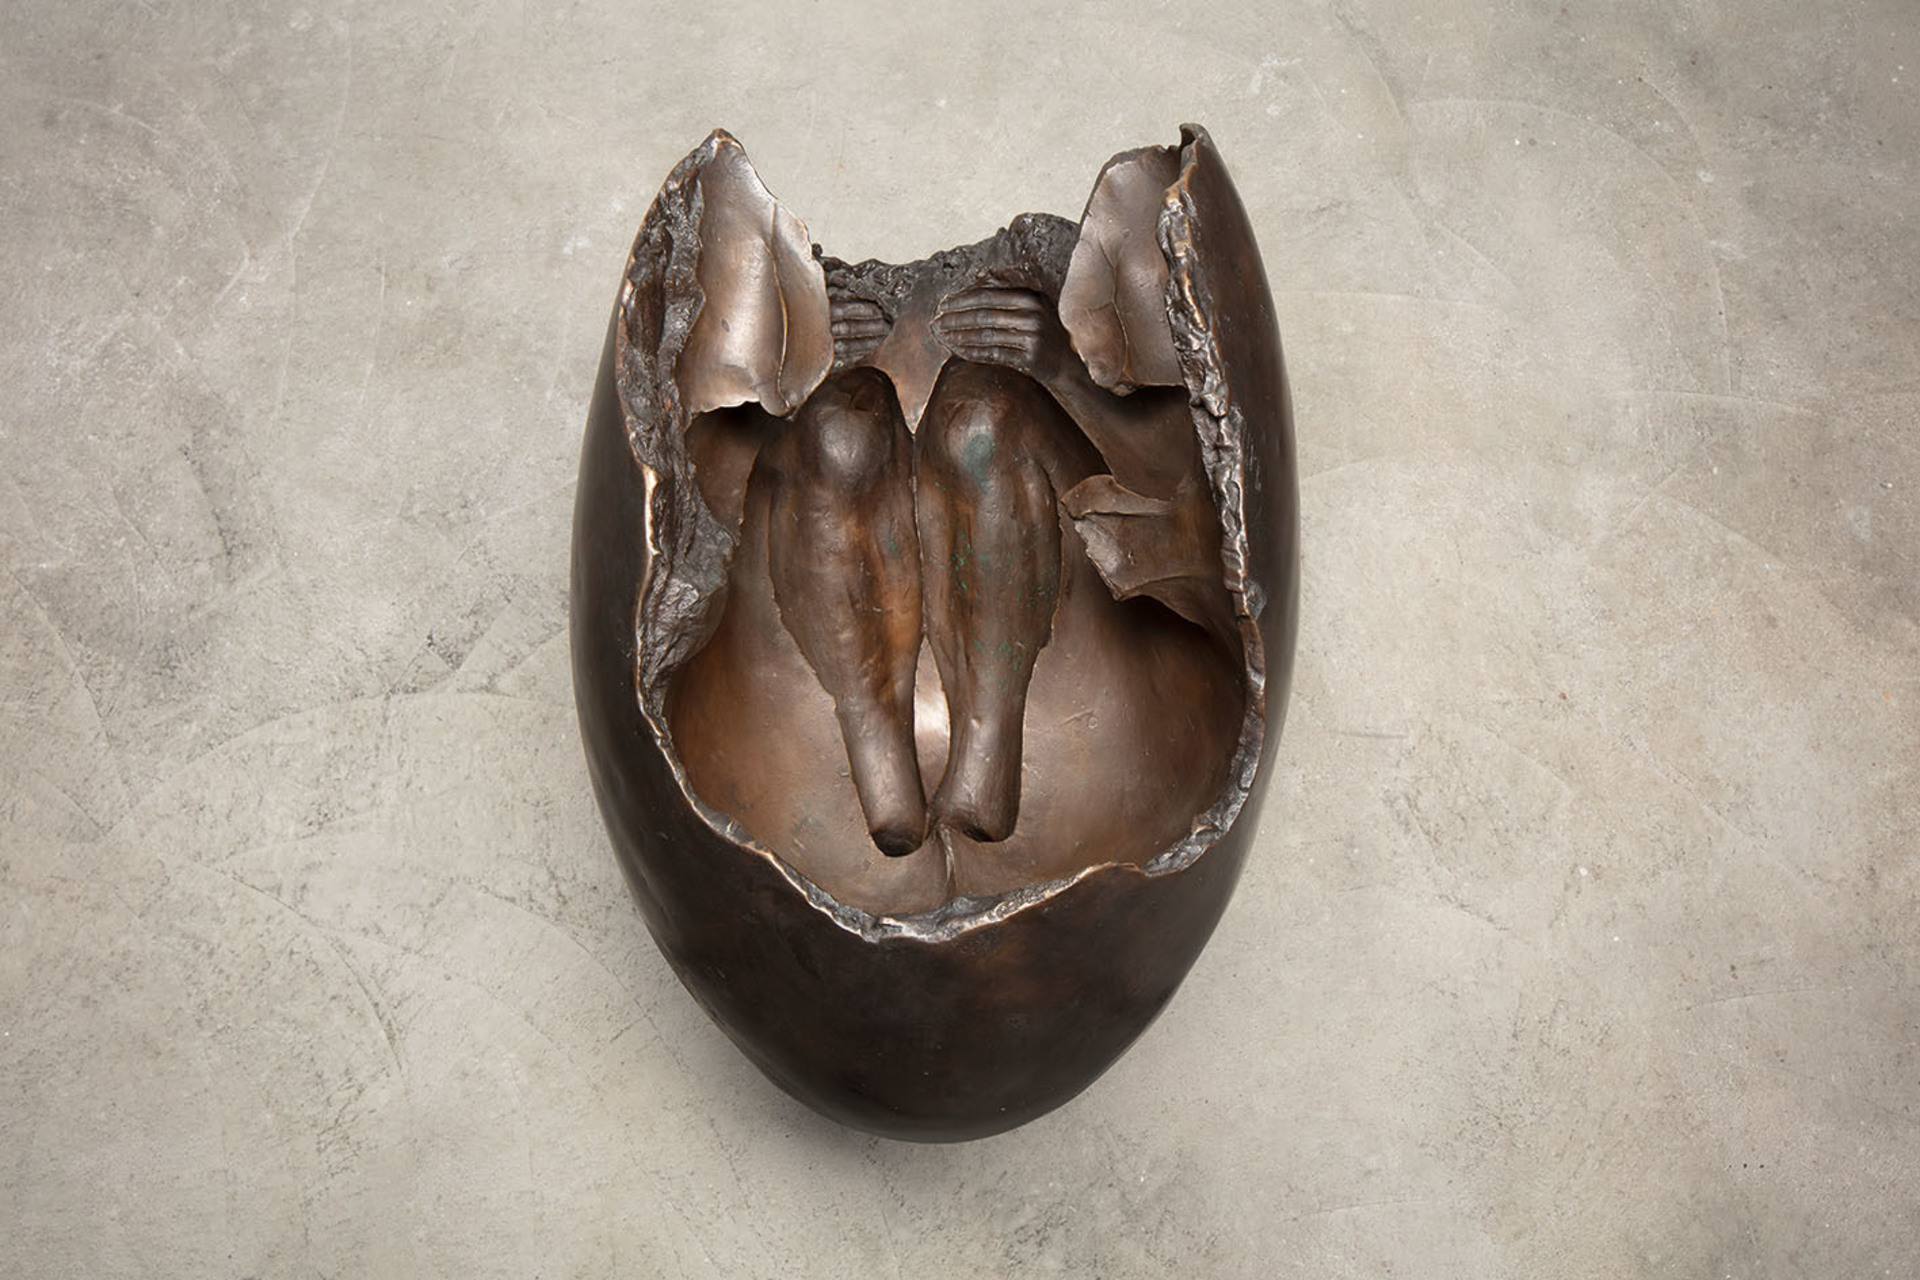 2_ Lidsk‚ vejce, 1968, ź steźnŘ patinovan  bronz, v. 64 cm, d. 76,5 cm, ç. 57,5 cm, NFKZ, foto David Stecker_2.jpg